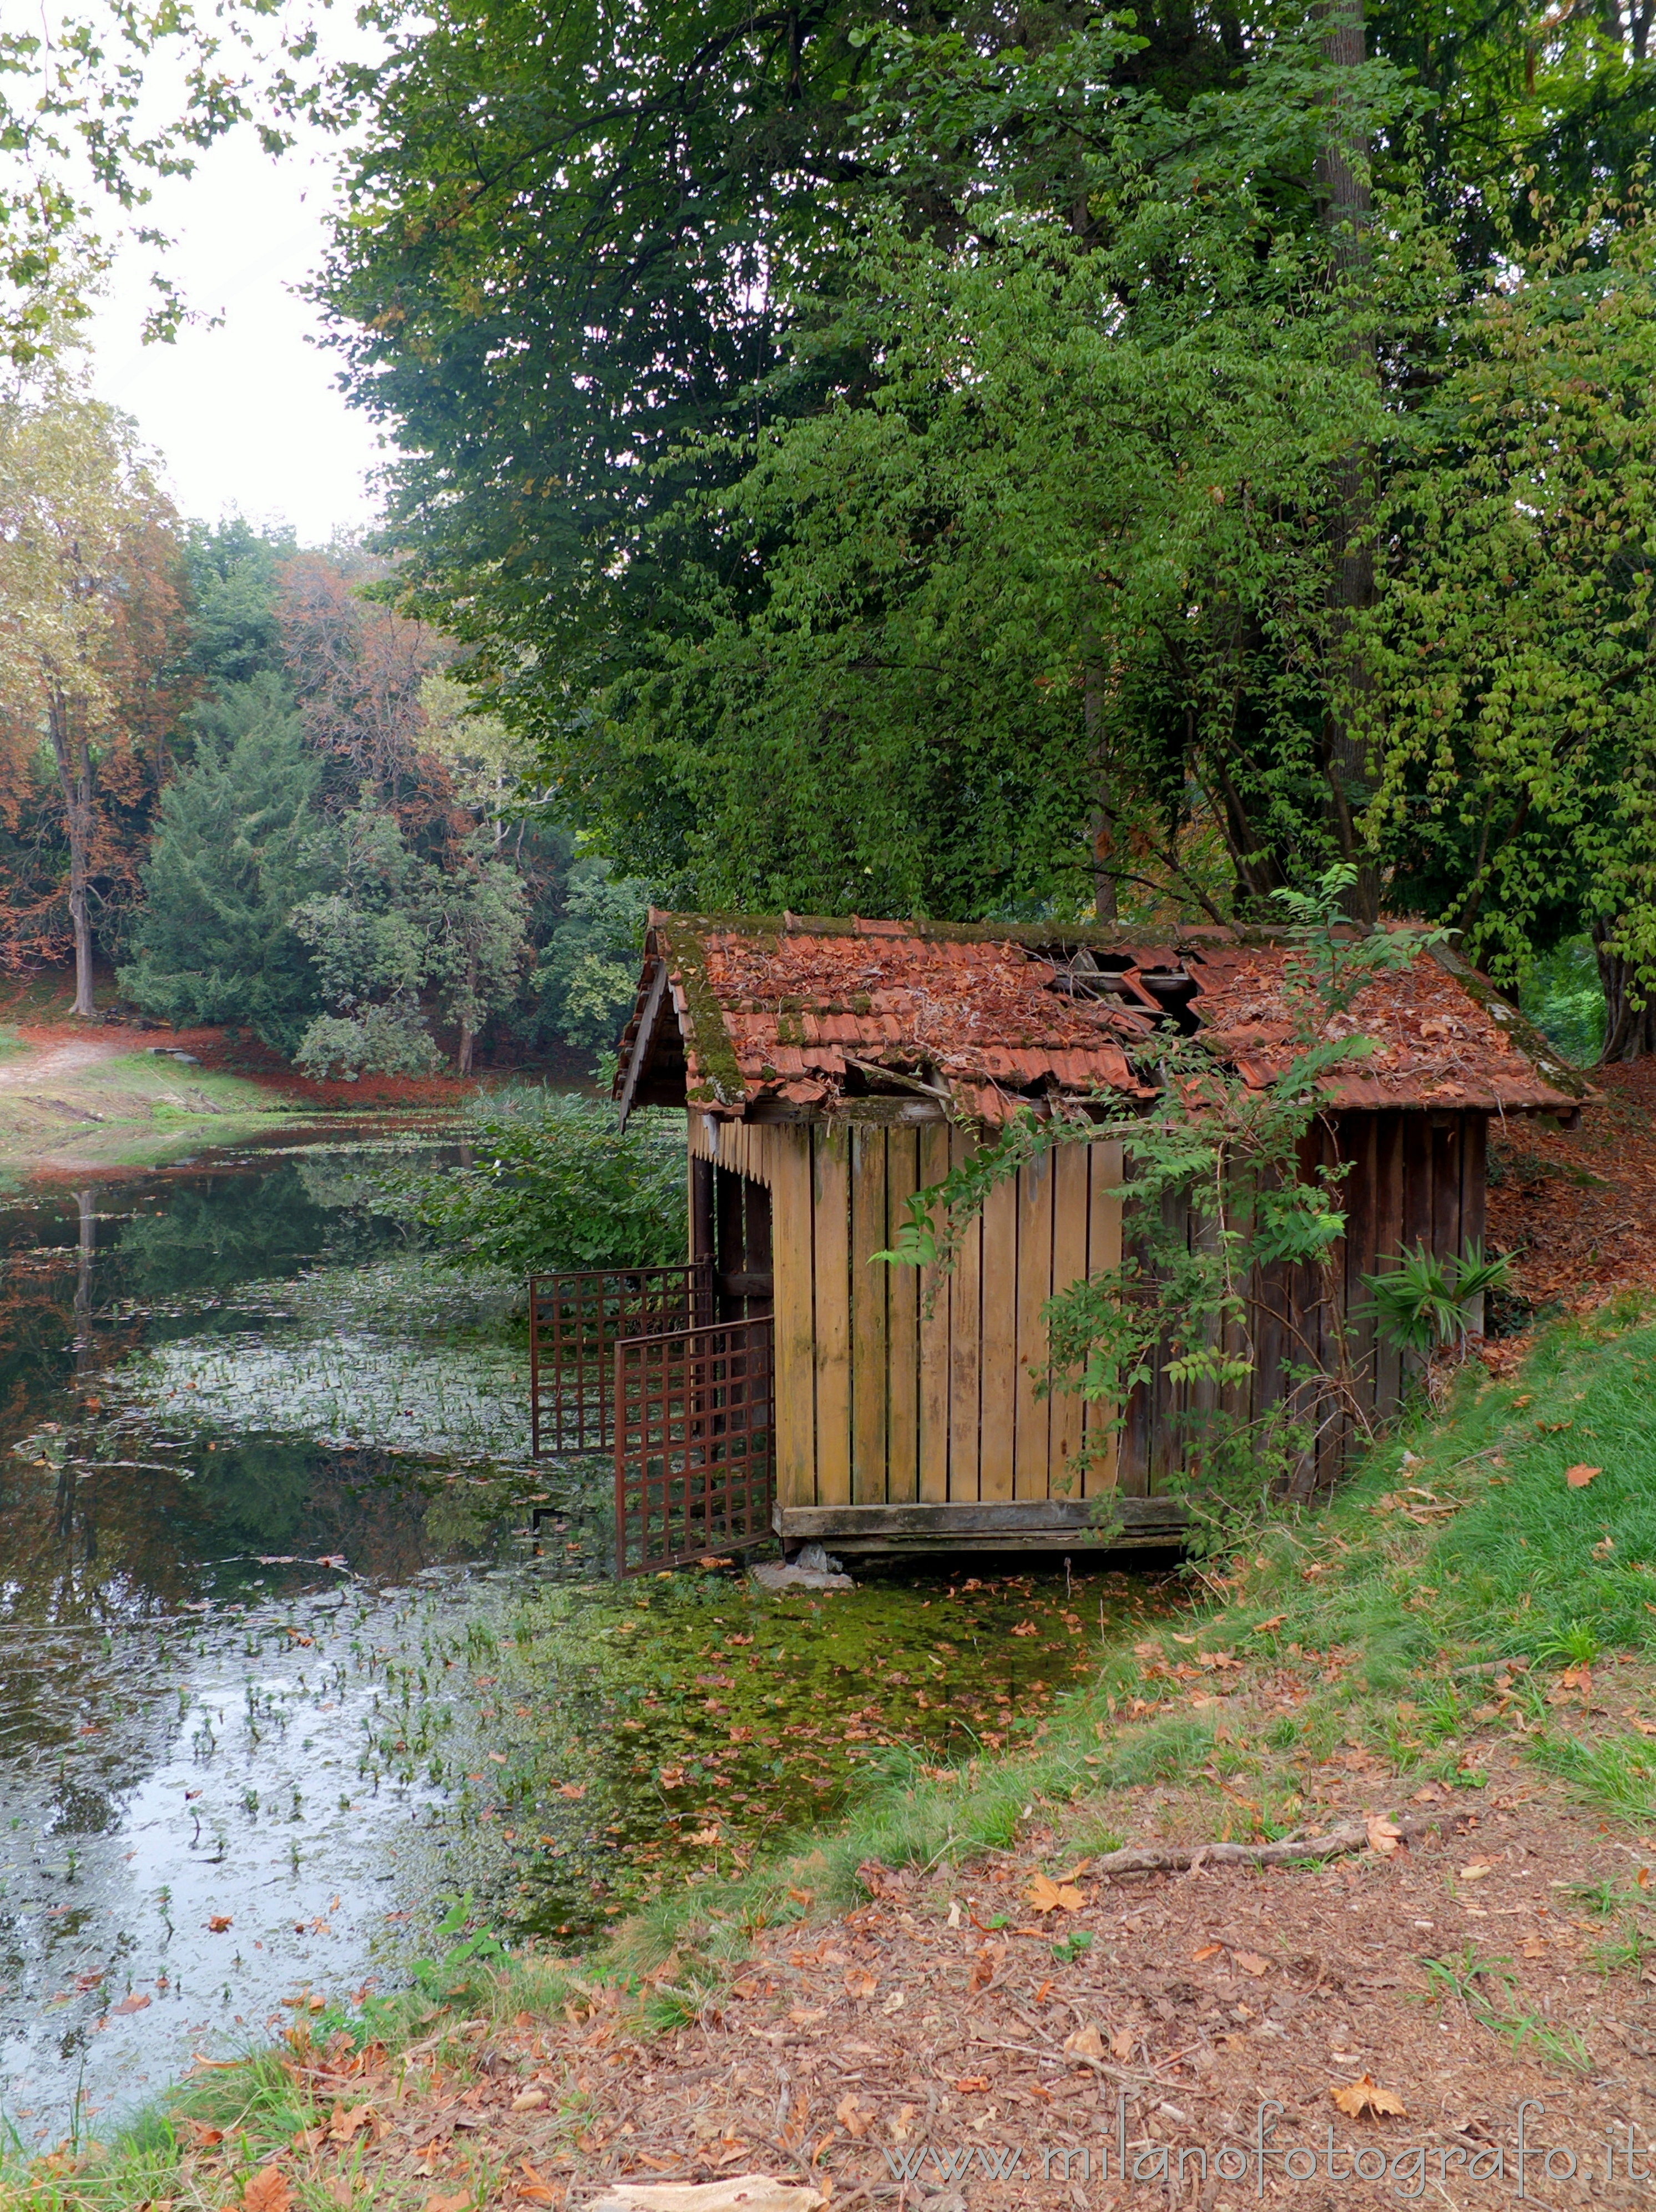 Sirtori (Lecco): La darsena nel laghetto del parco di Villa Besana - Sirtori (Lecco)